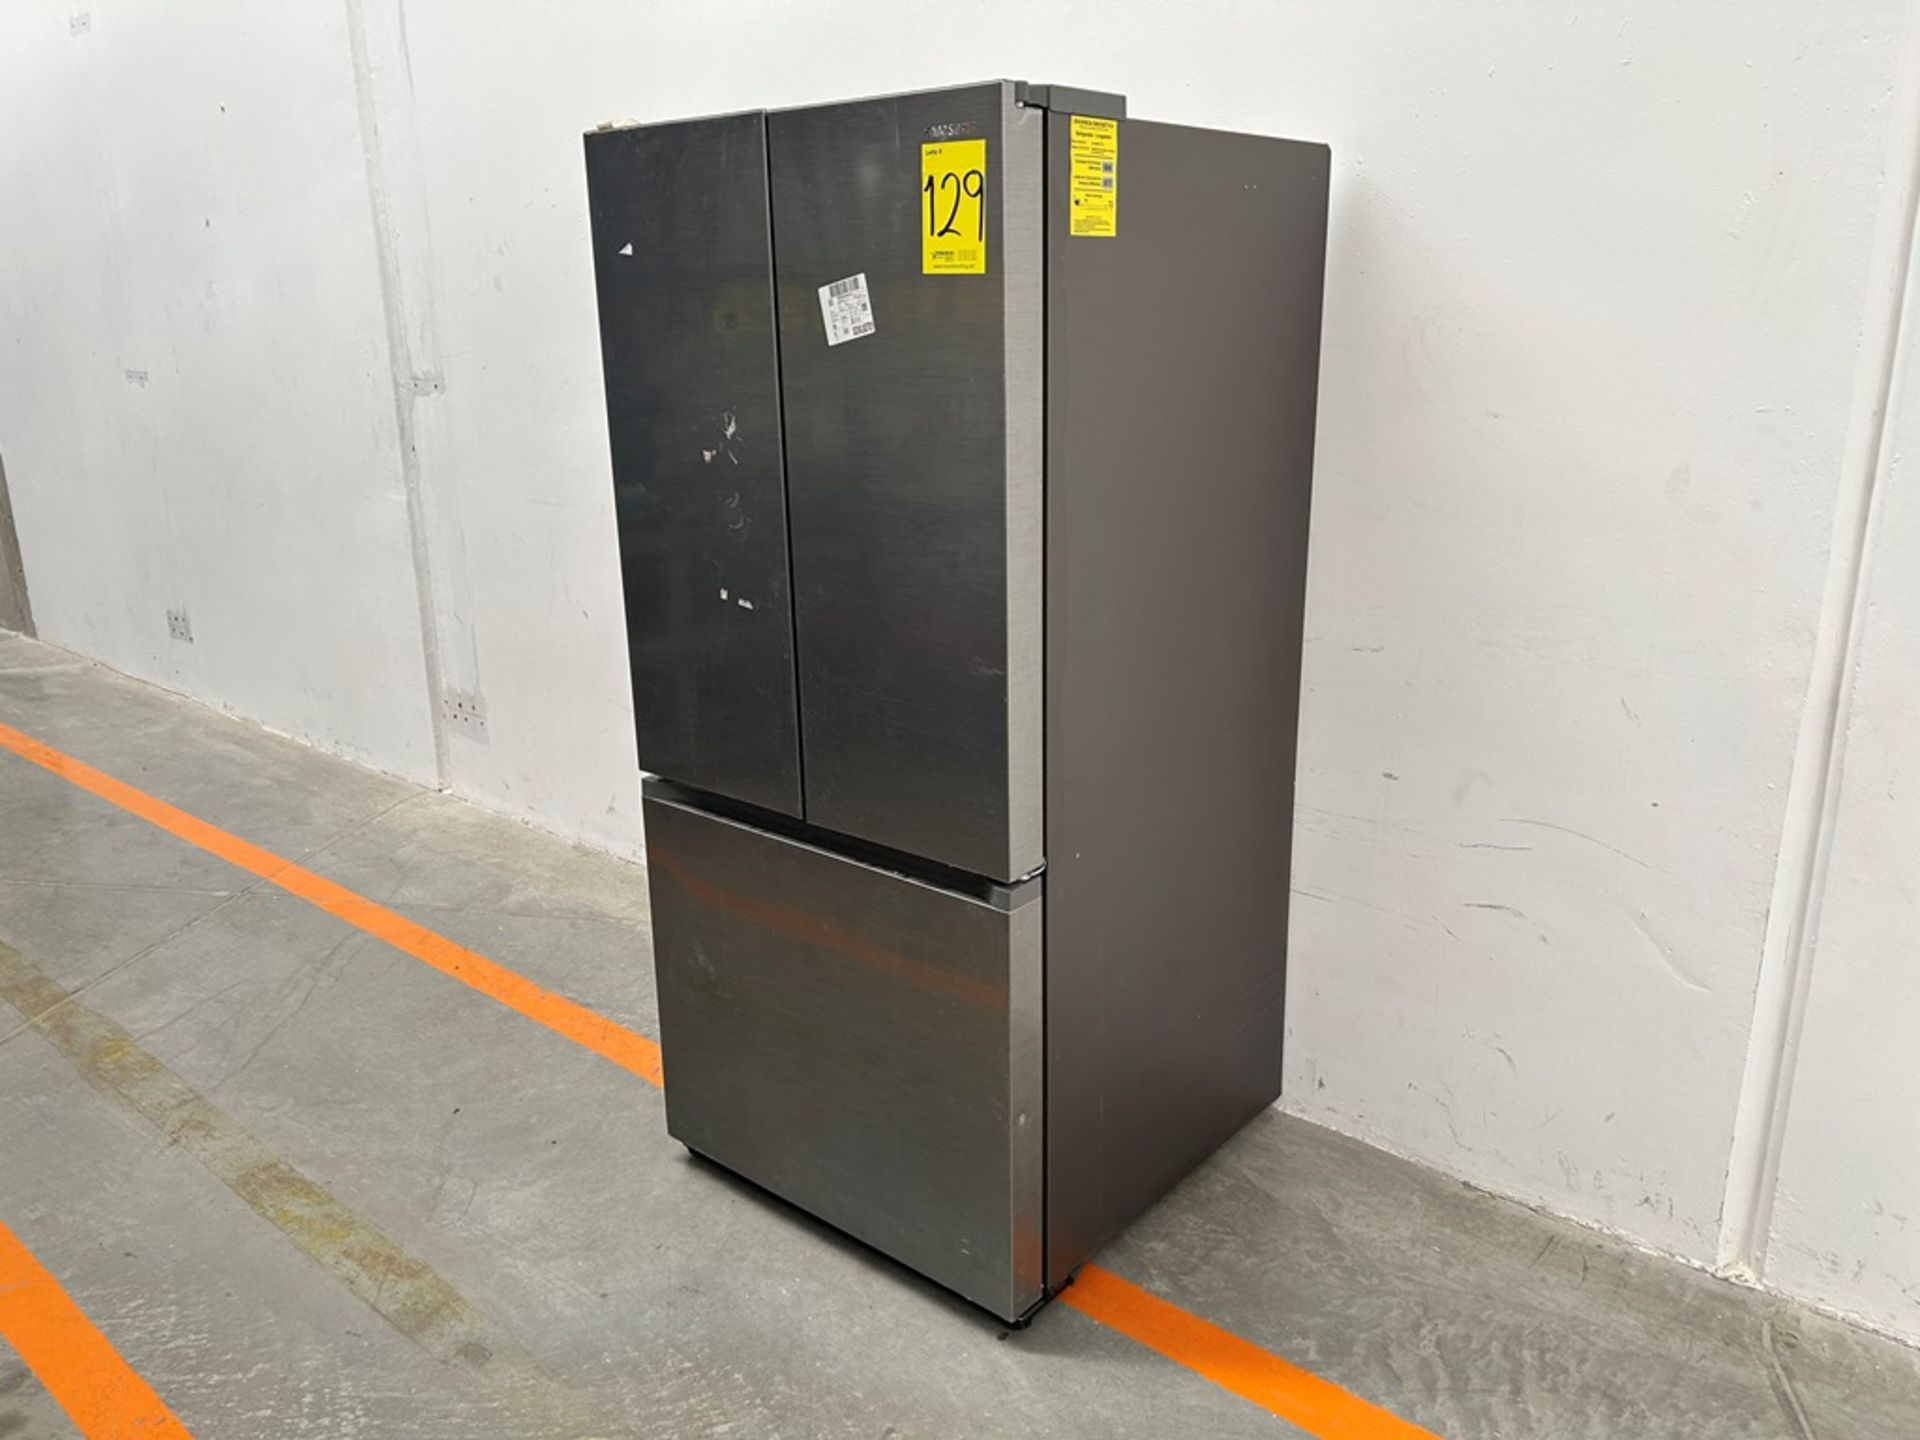 (NUEVO) Refrigerador Marca SAMSUNG, Modelo RF25C5151S9, Serie 100036K, Color GRIS - Image 3 of 7